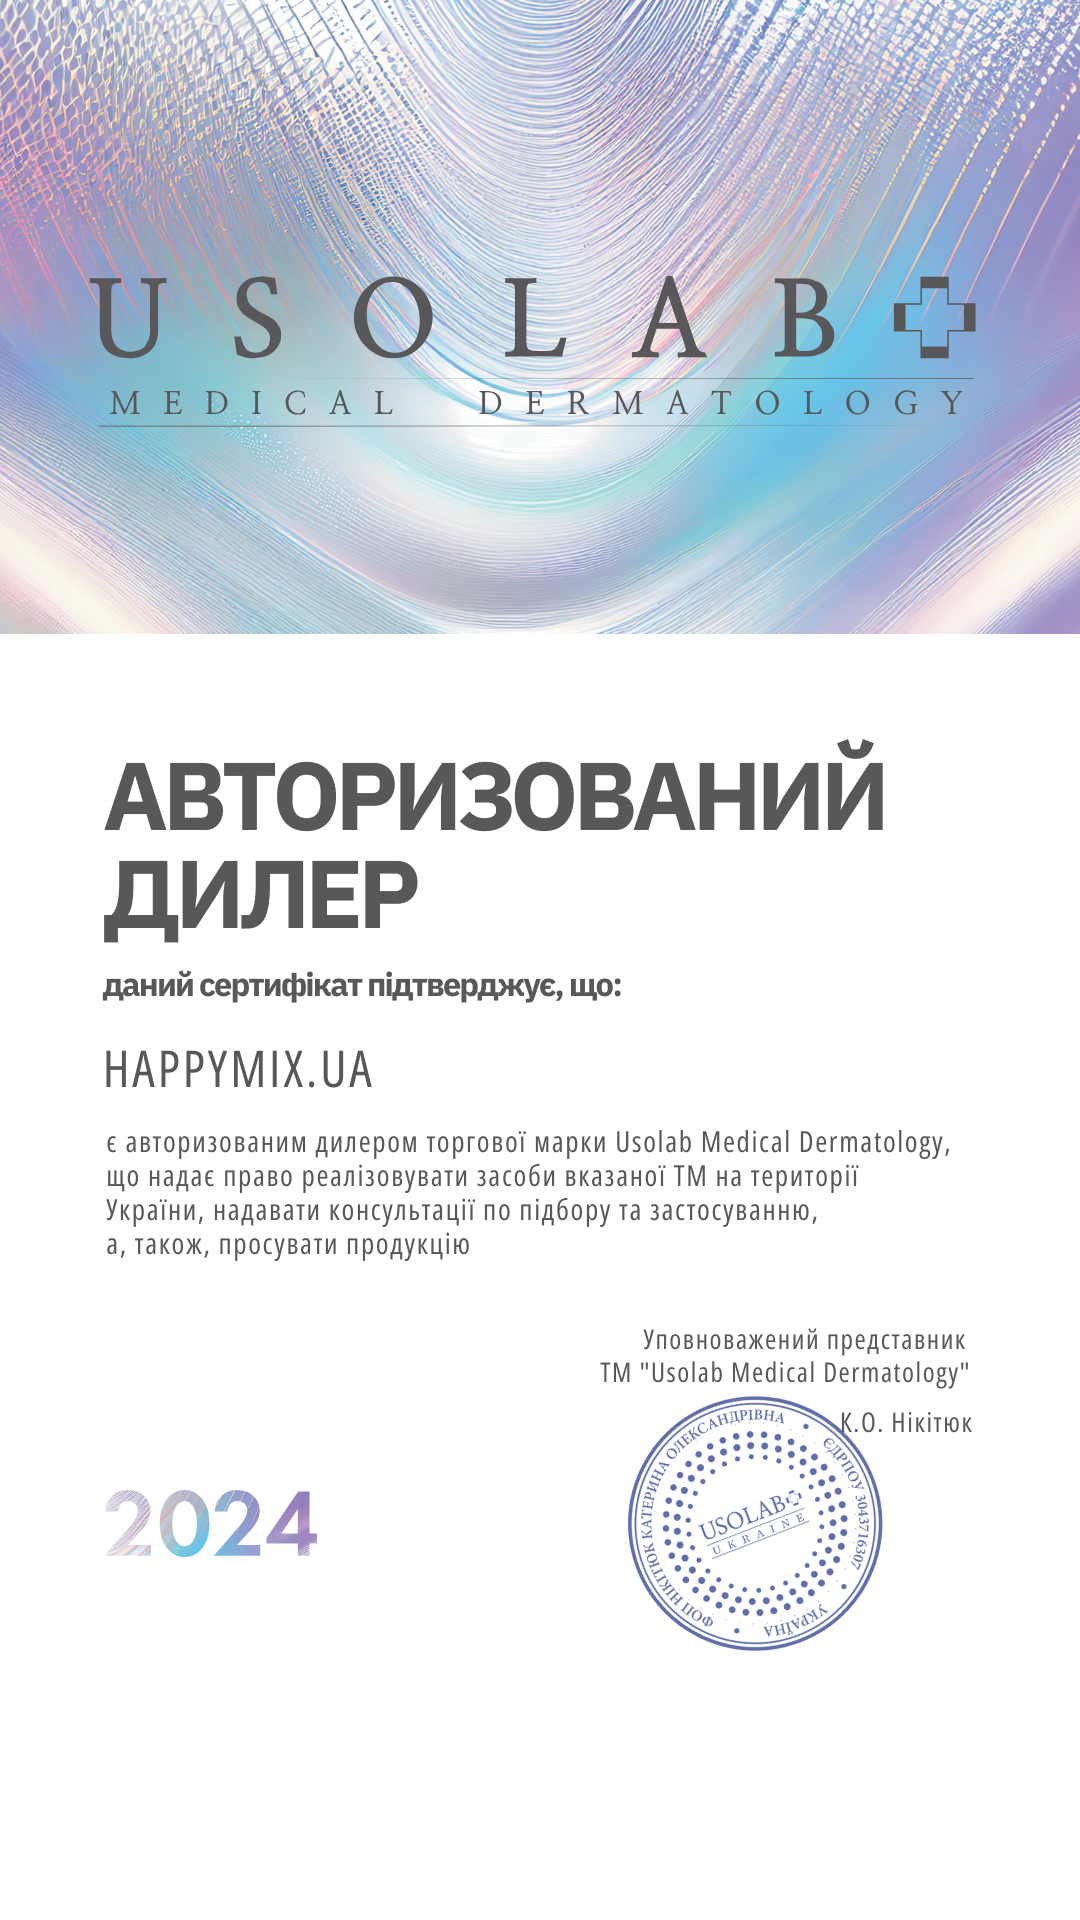 Офіційний сайт реселер USOLAB - HAPPYMIX.UA